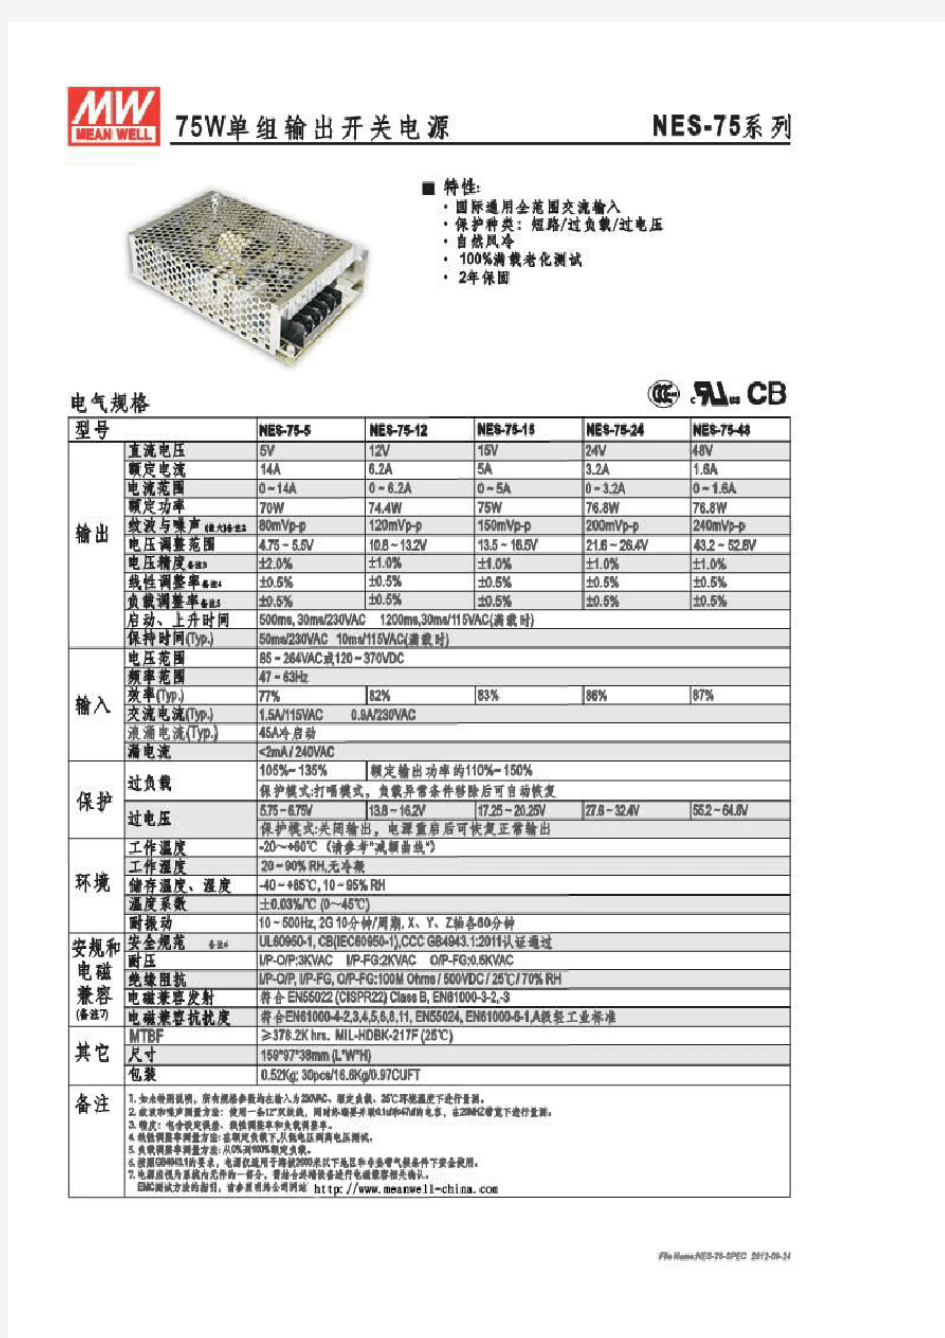 明纬电源NE系列产品规格书NES-75-spec开关电源产品型号手册表明纬开关电源。